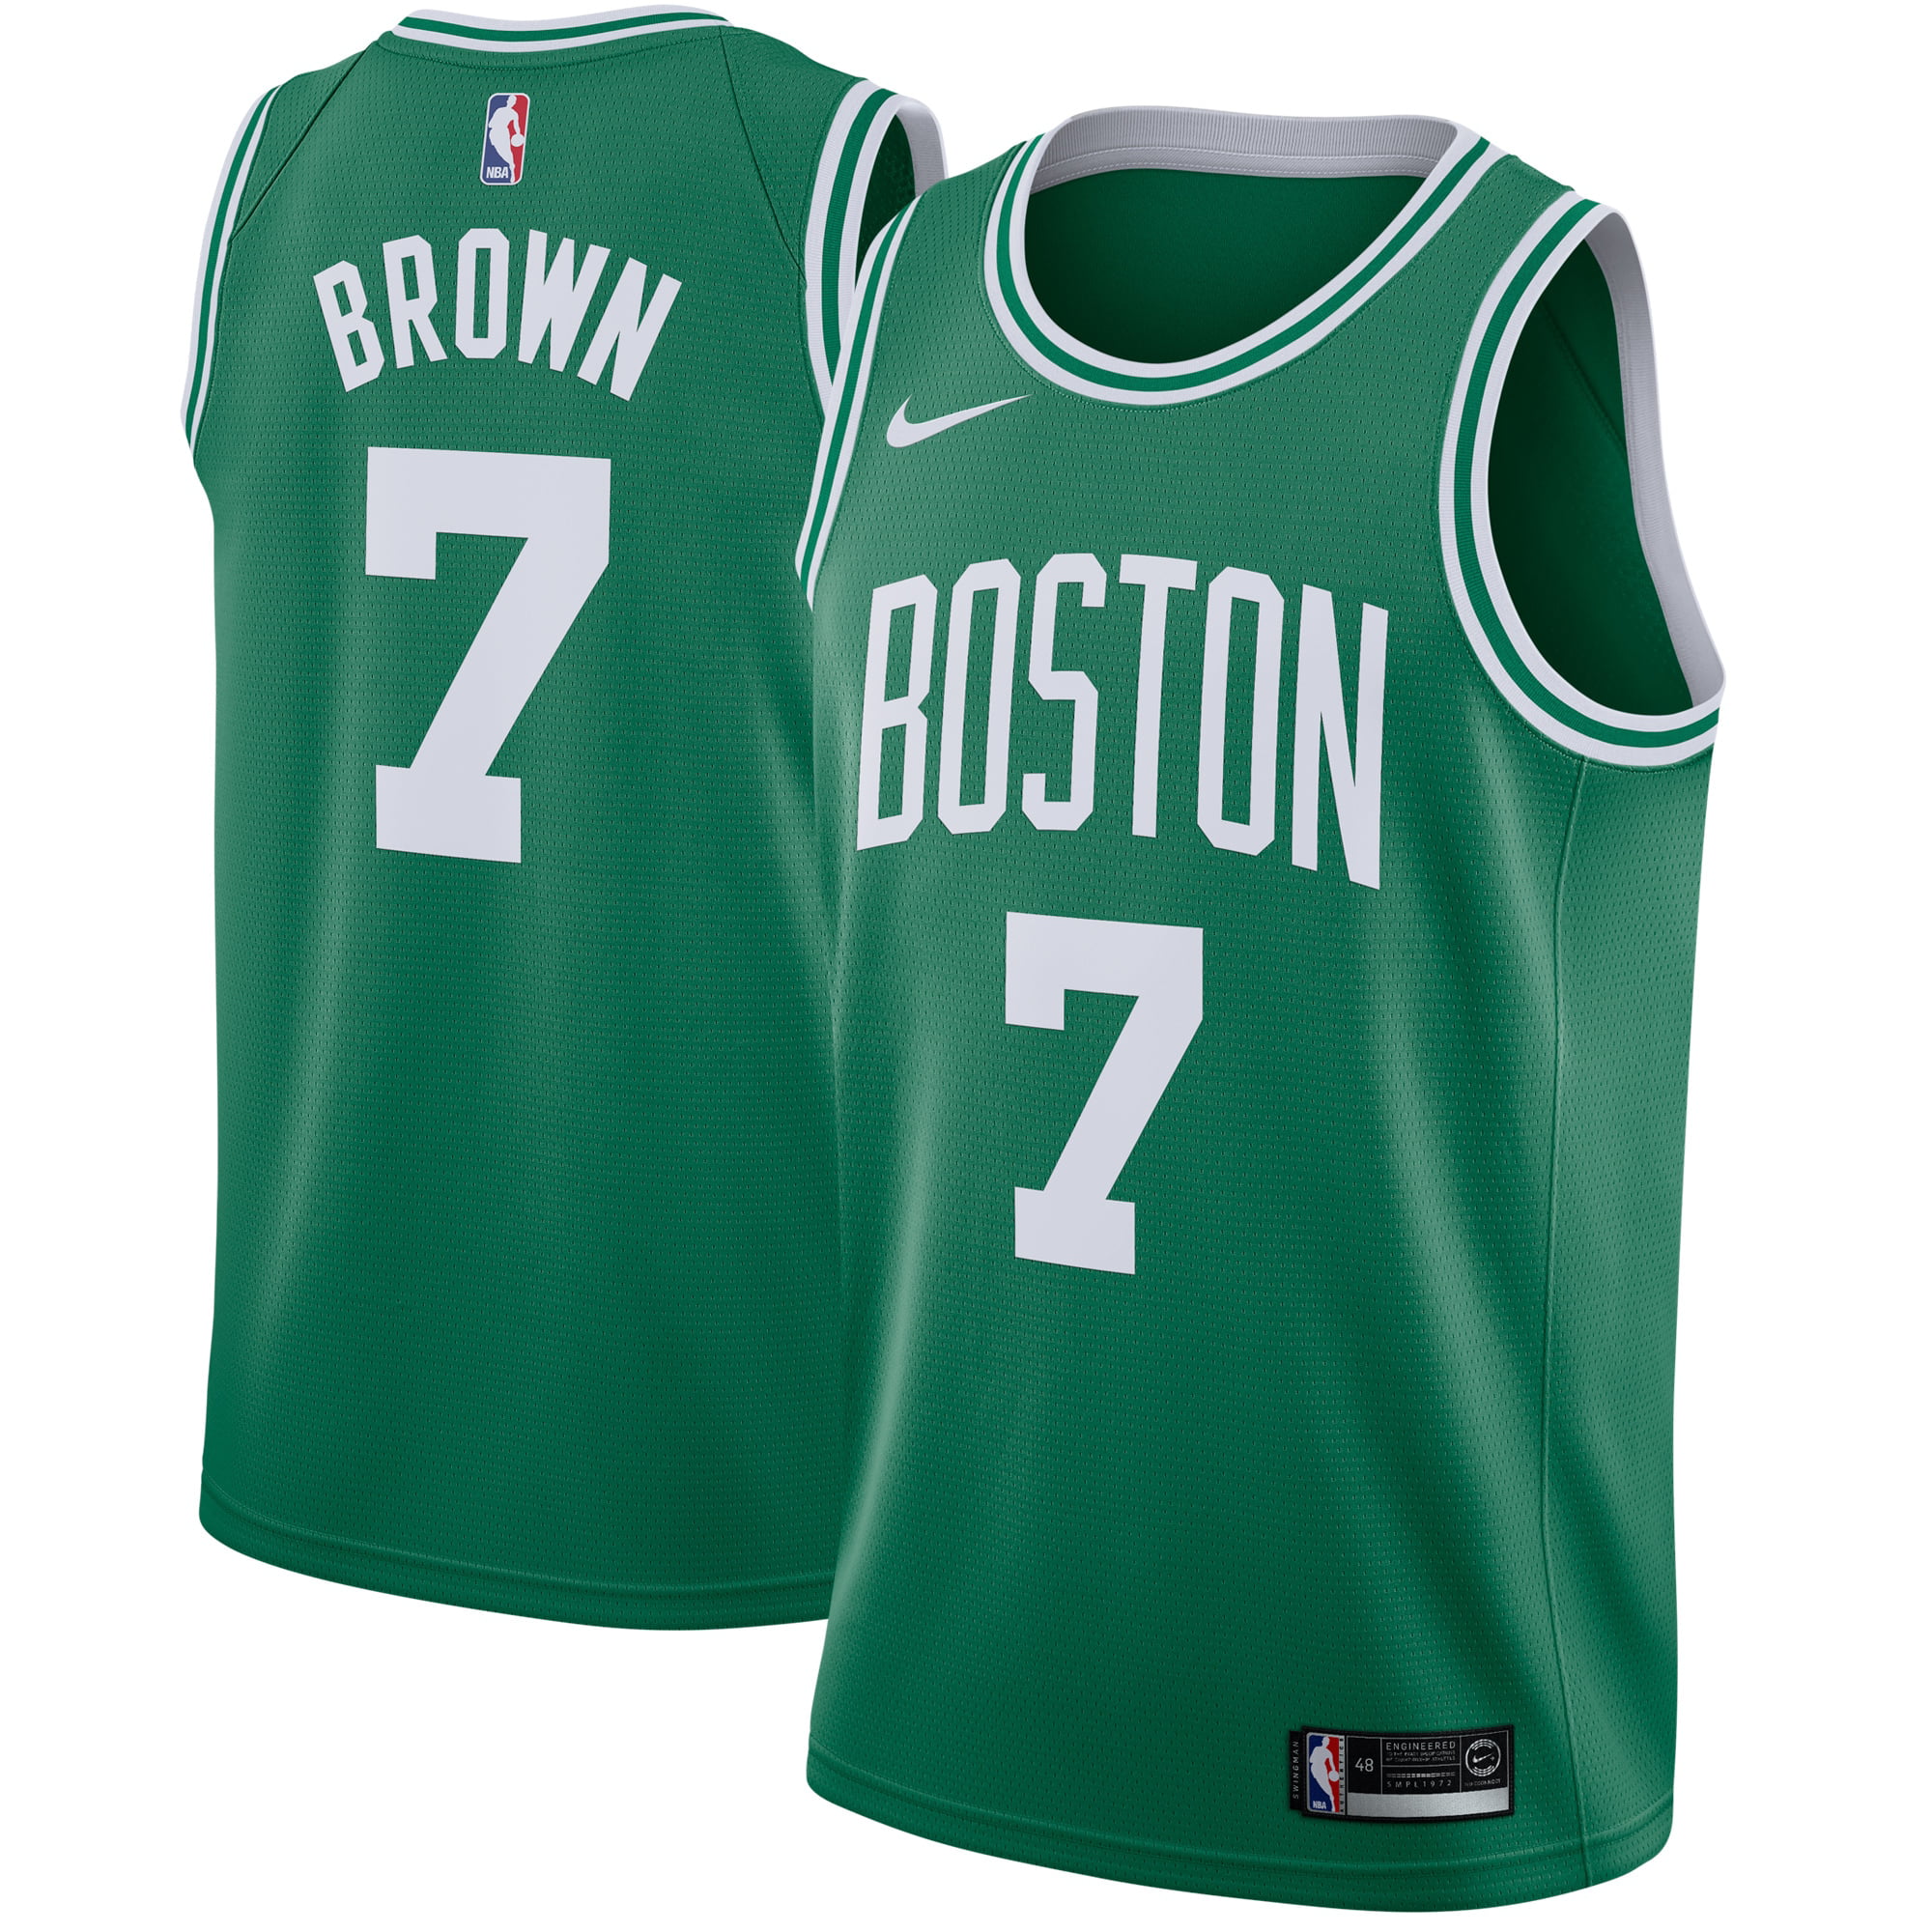 Nike - Jaylen Brown î€€Bostonî€ î€€Celticsî€ Nike Swingman î€€Jerseyî€ Green - Icon Edition - Walmart.com ...